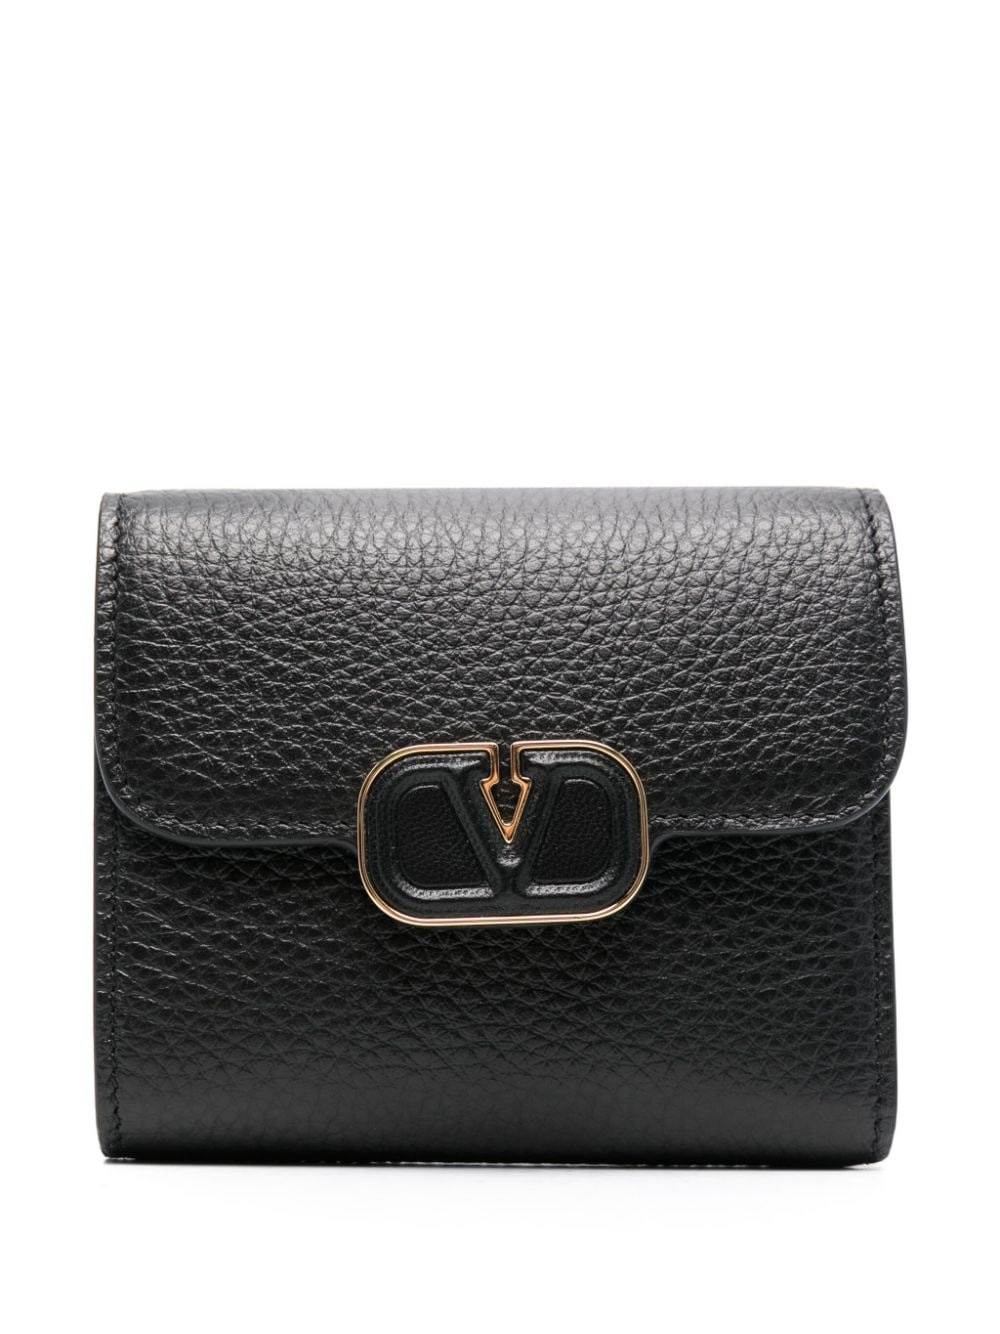 VLogo plaque wallet - 1